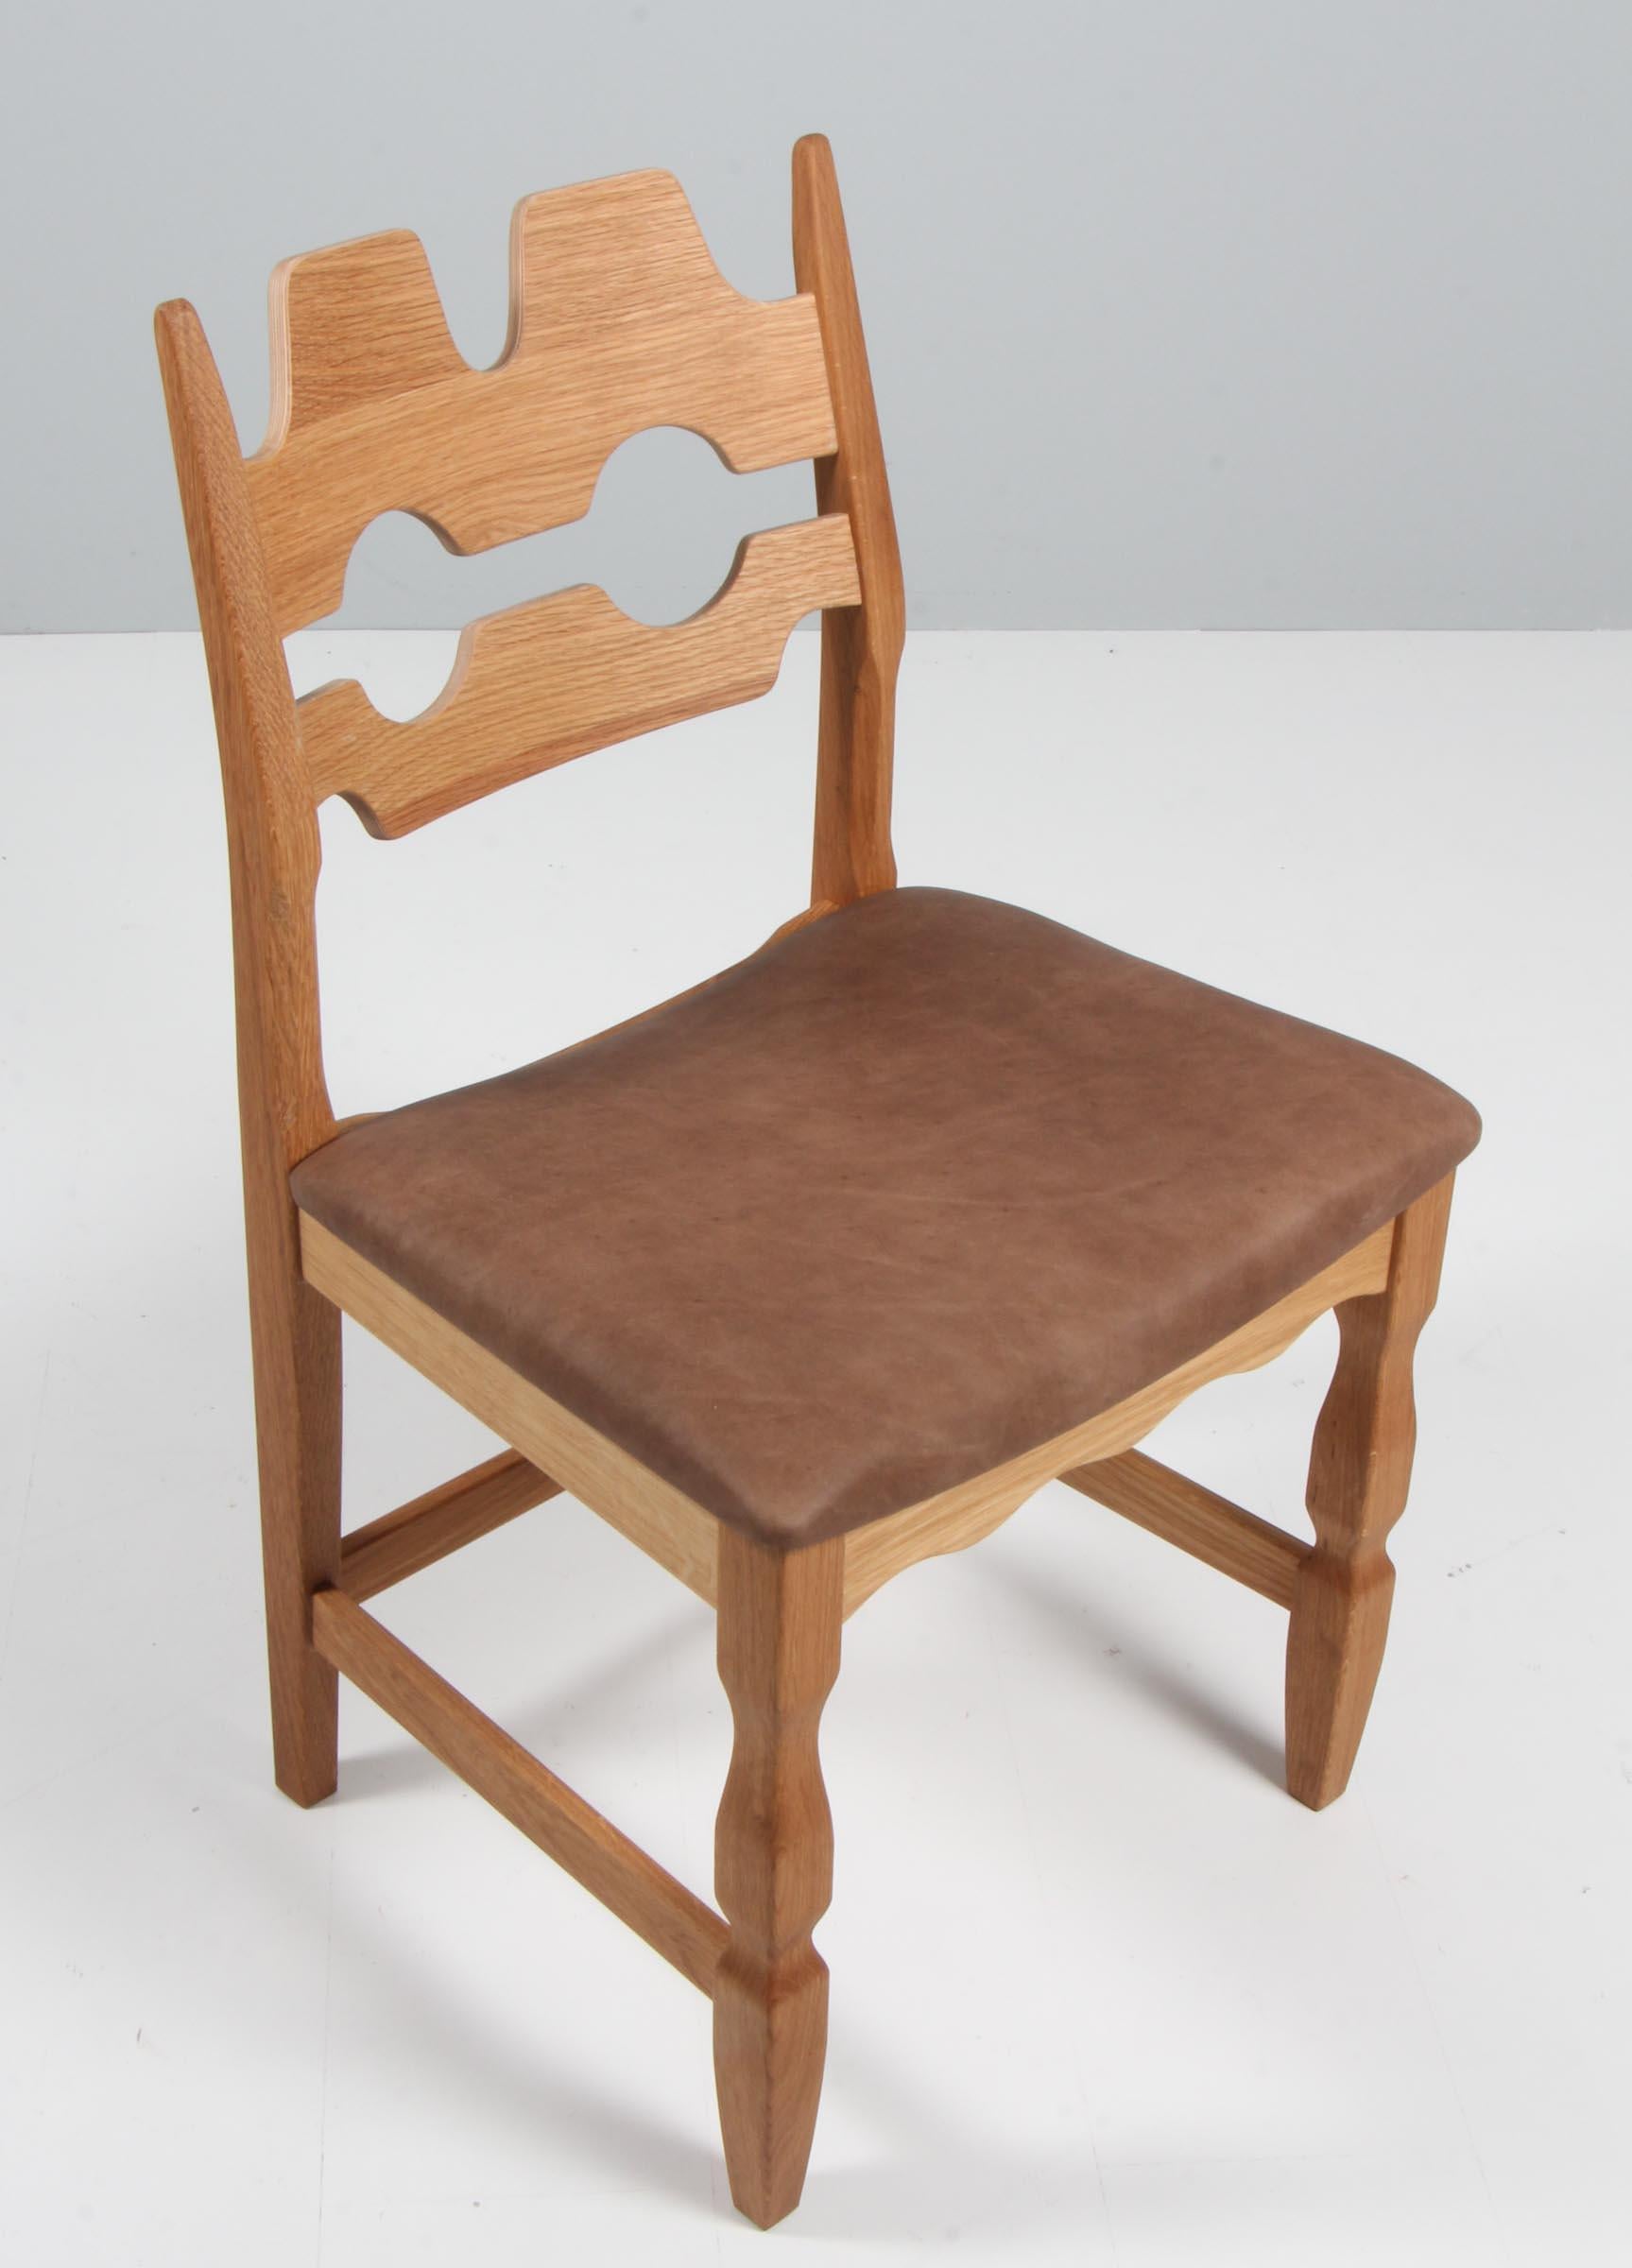 Ensemble de chaises de salle à manger de Henning Kjærnulf, en chêne et cuir aniline tabac vintage.

Un design rafraîchissant où le baroque audacieux se marie bien avec le modernisme du milieu du siècle.

Modèle : Lame de rasoir

Réalisé par Another